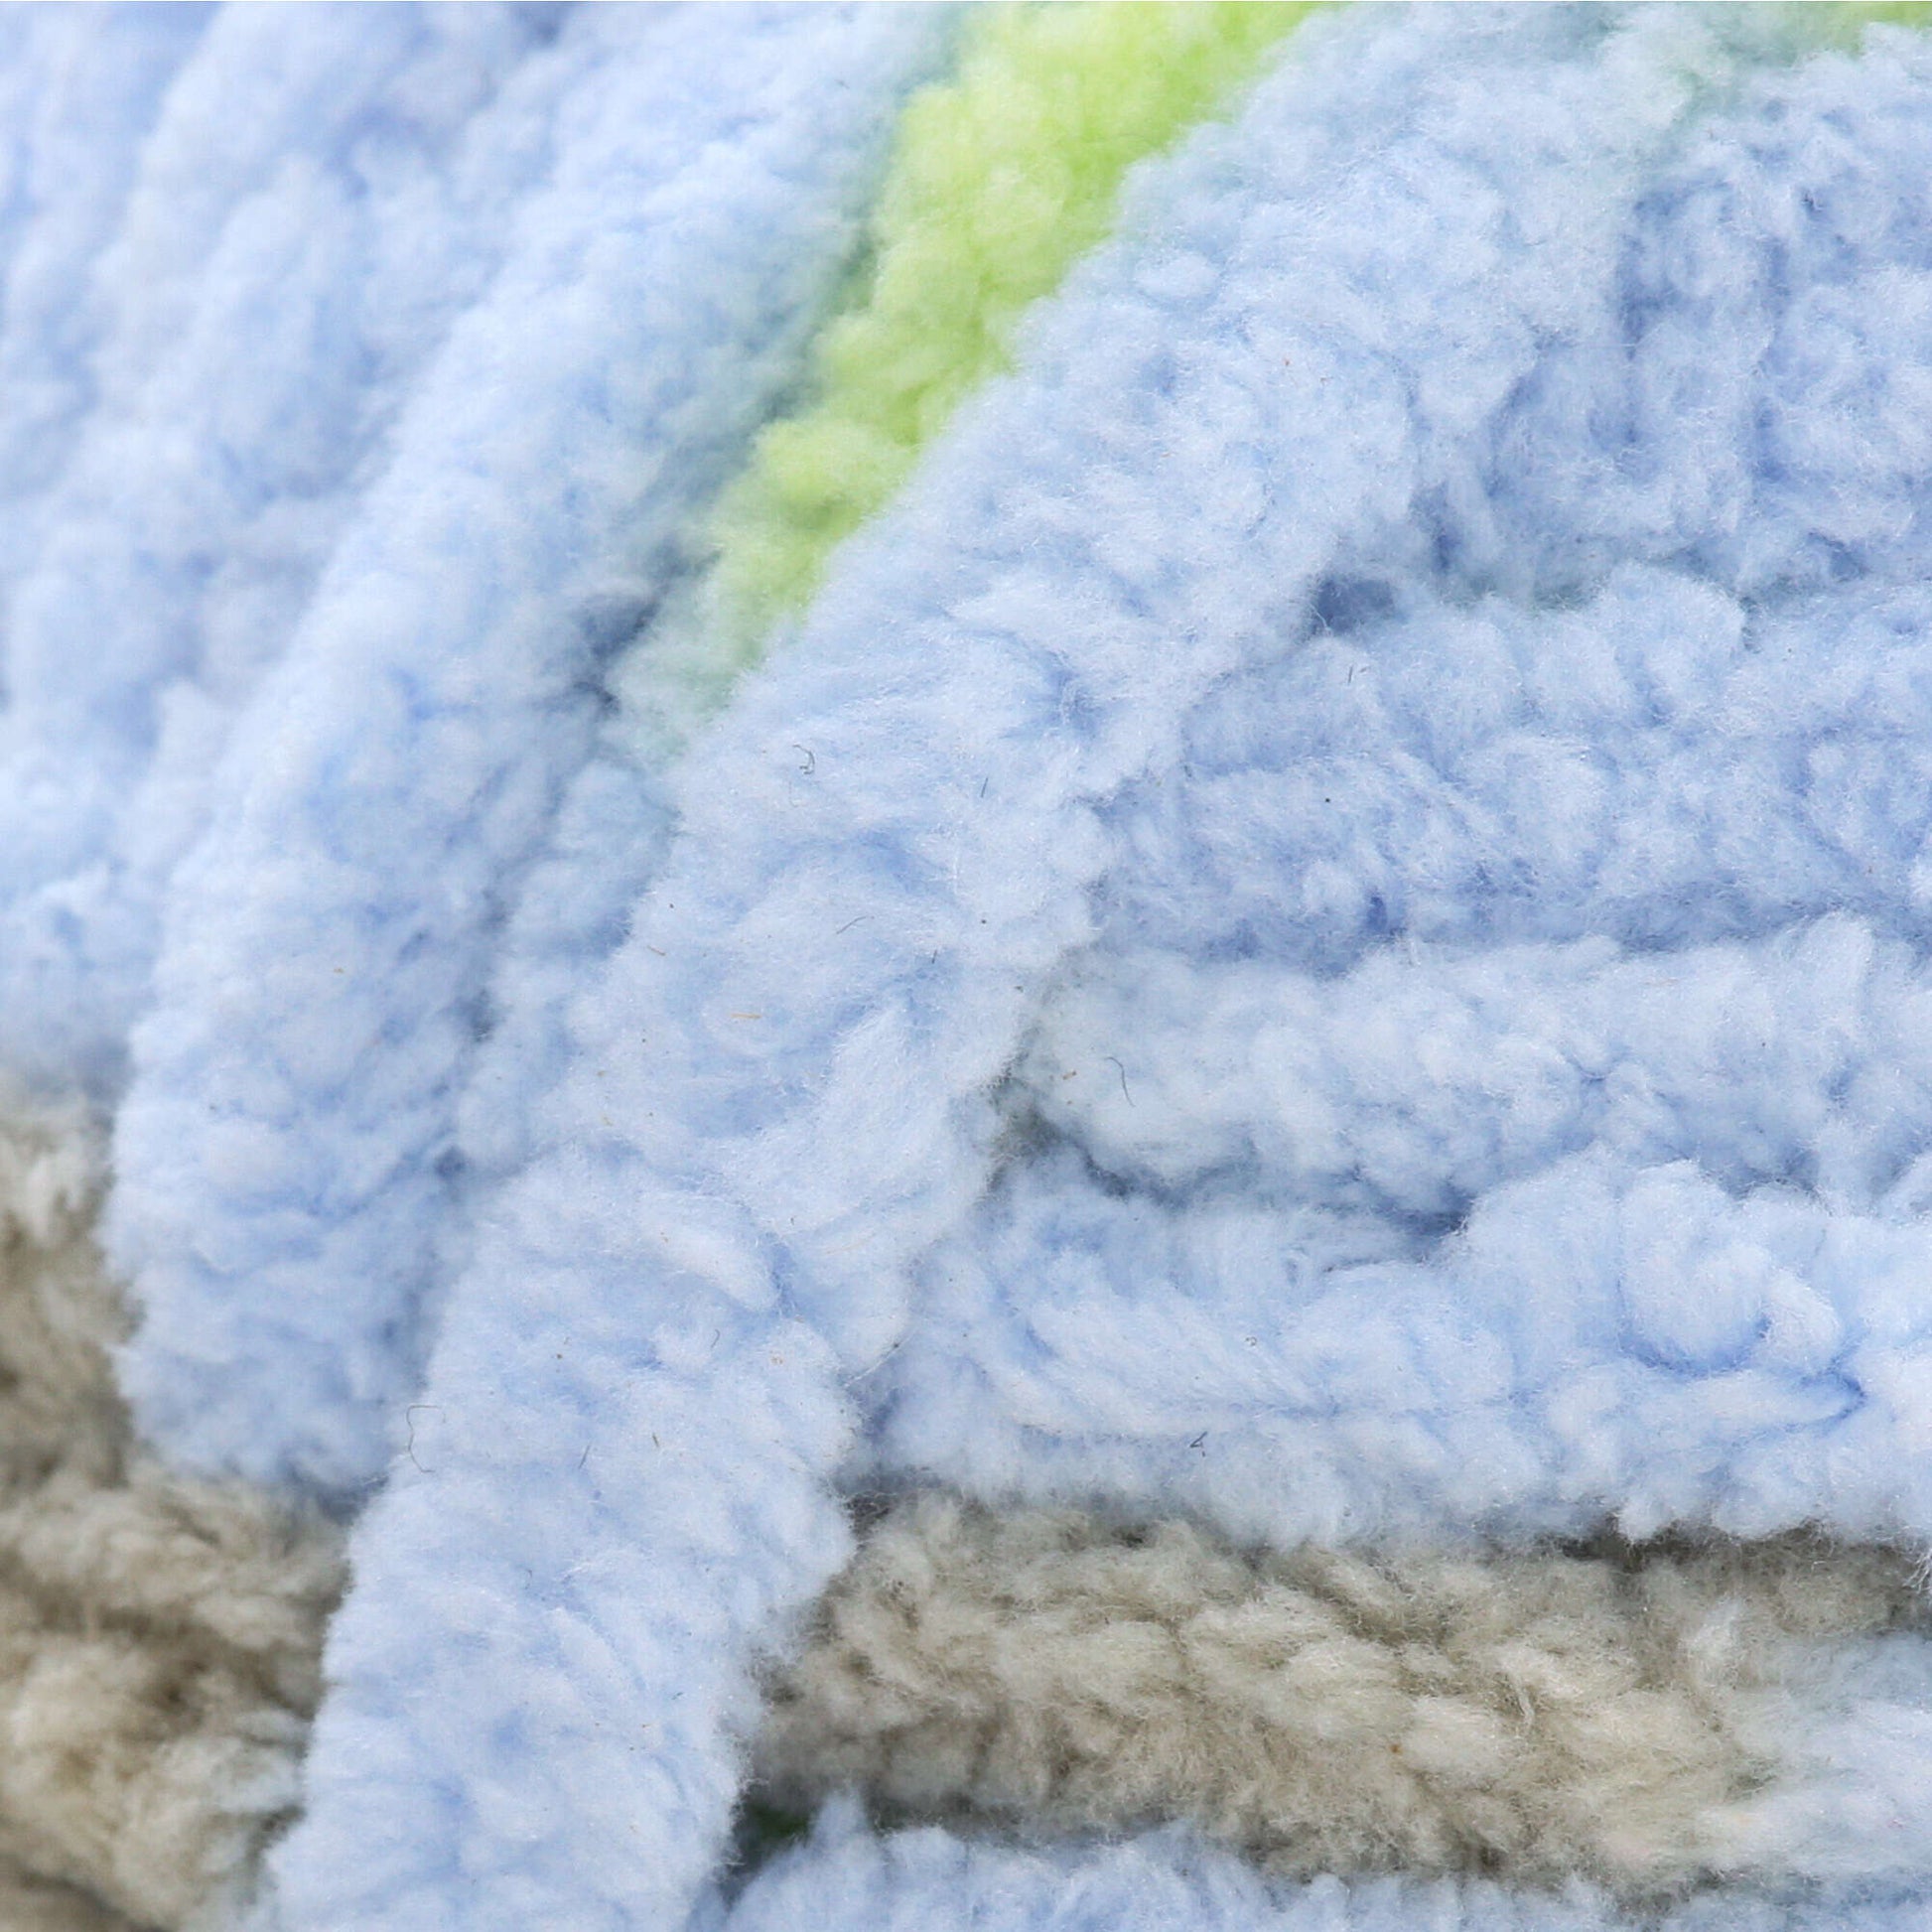 Bernat Baby Blanket Yarn-Sand Baby, 1 count - Harris Teeter